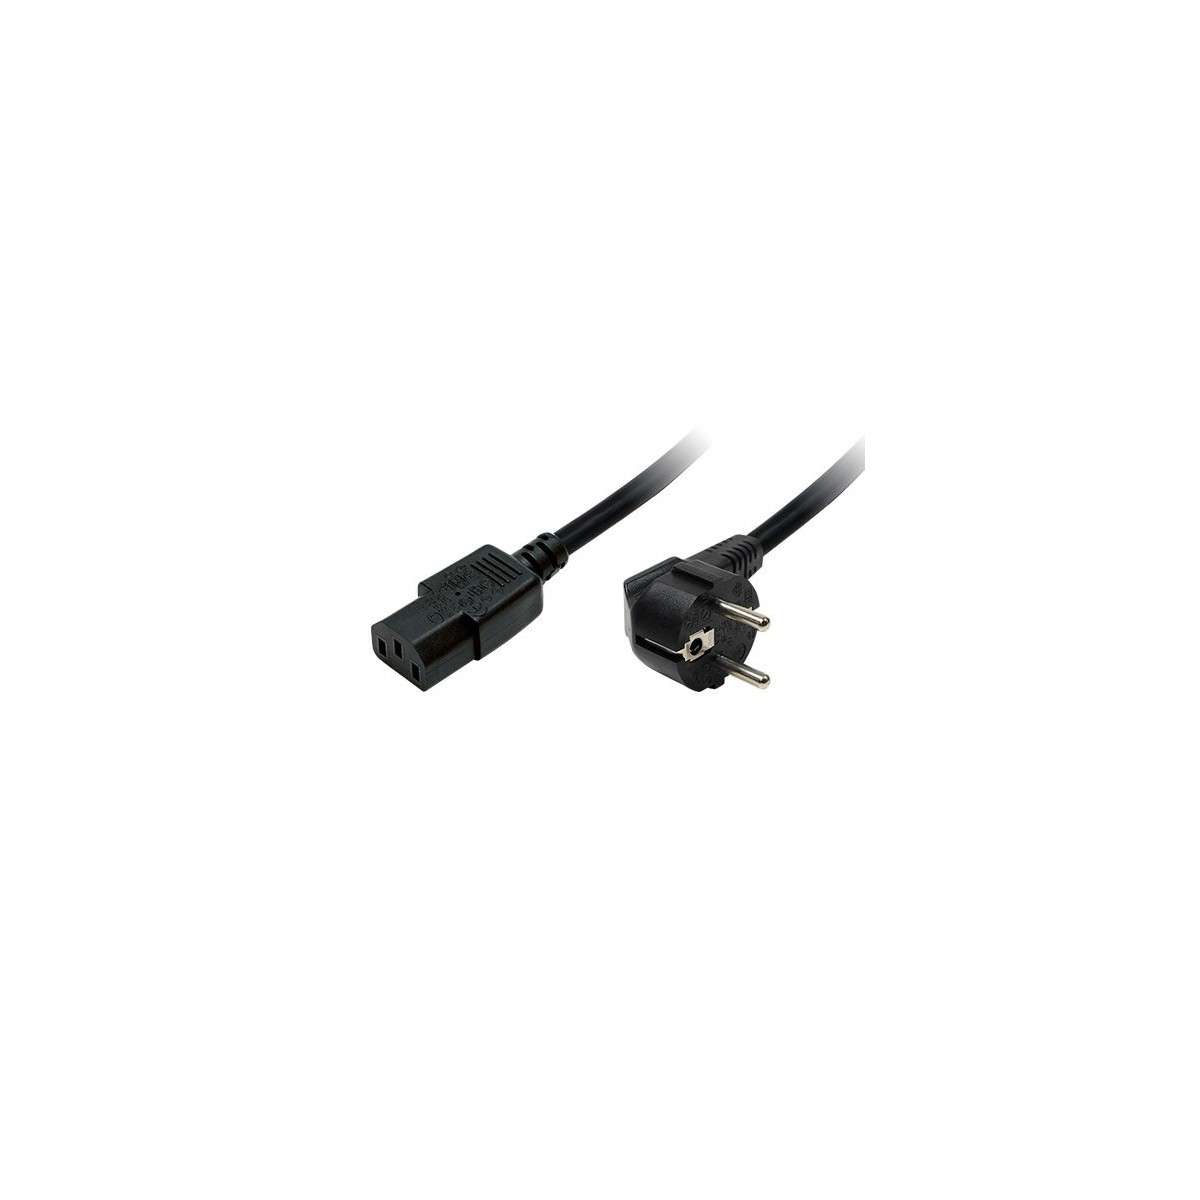 Cables con conectores de Alimentación : Cable alimentación 220v conector  IEC320 C14 / IEC320 C13 2.0m